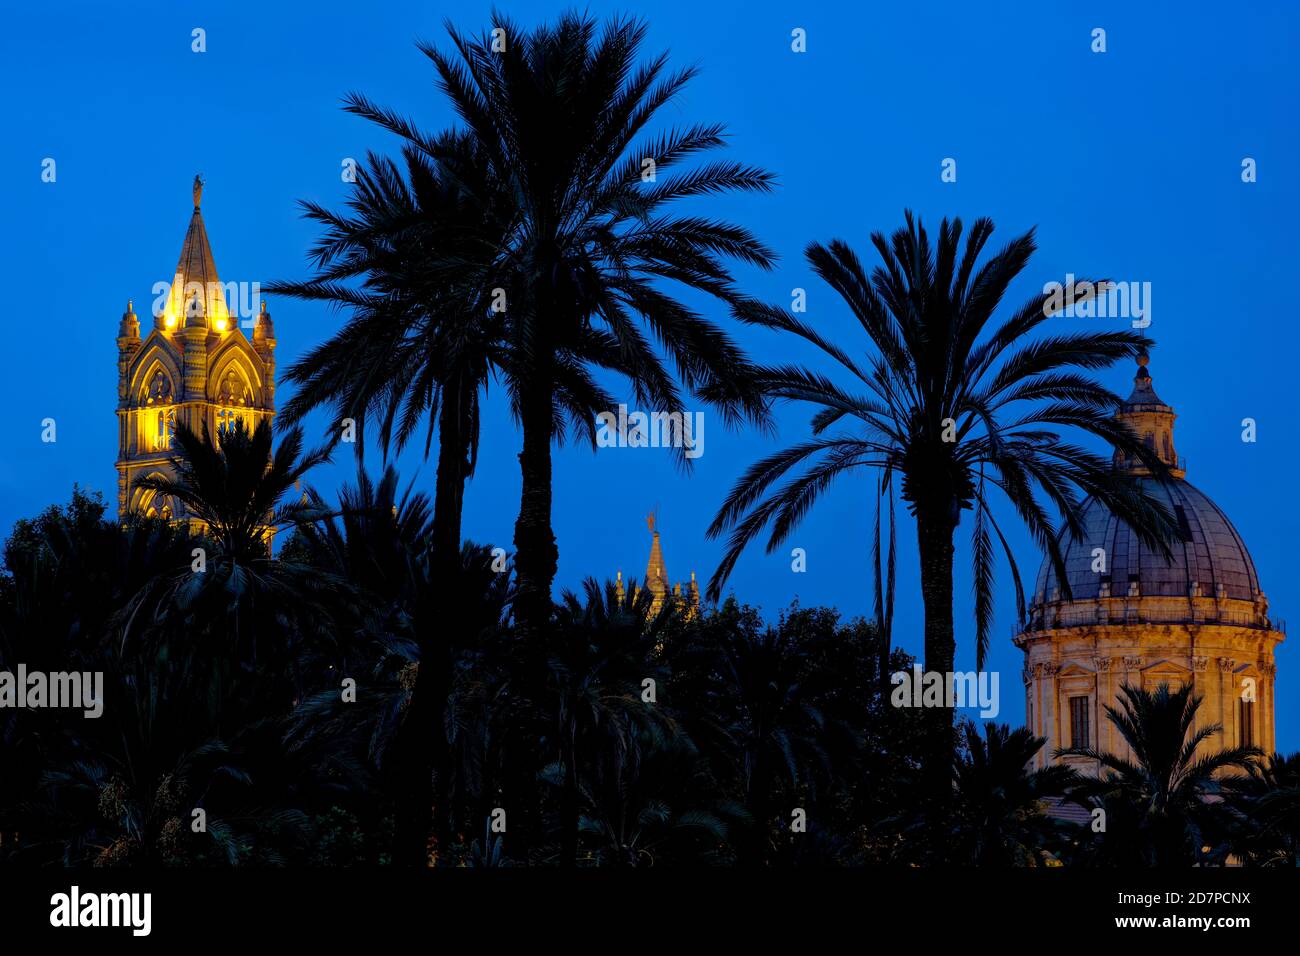 Dom und Turm von Palermo vom Park der Villa Bonanno in Palermo, Sizilien, Italien aus gesehen. Stockfoto